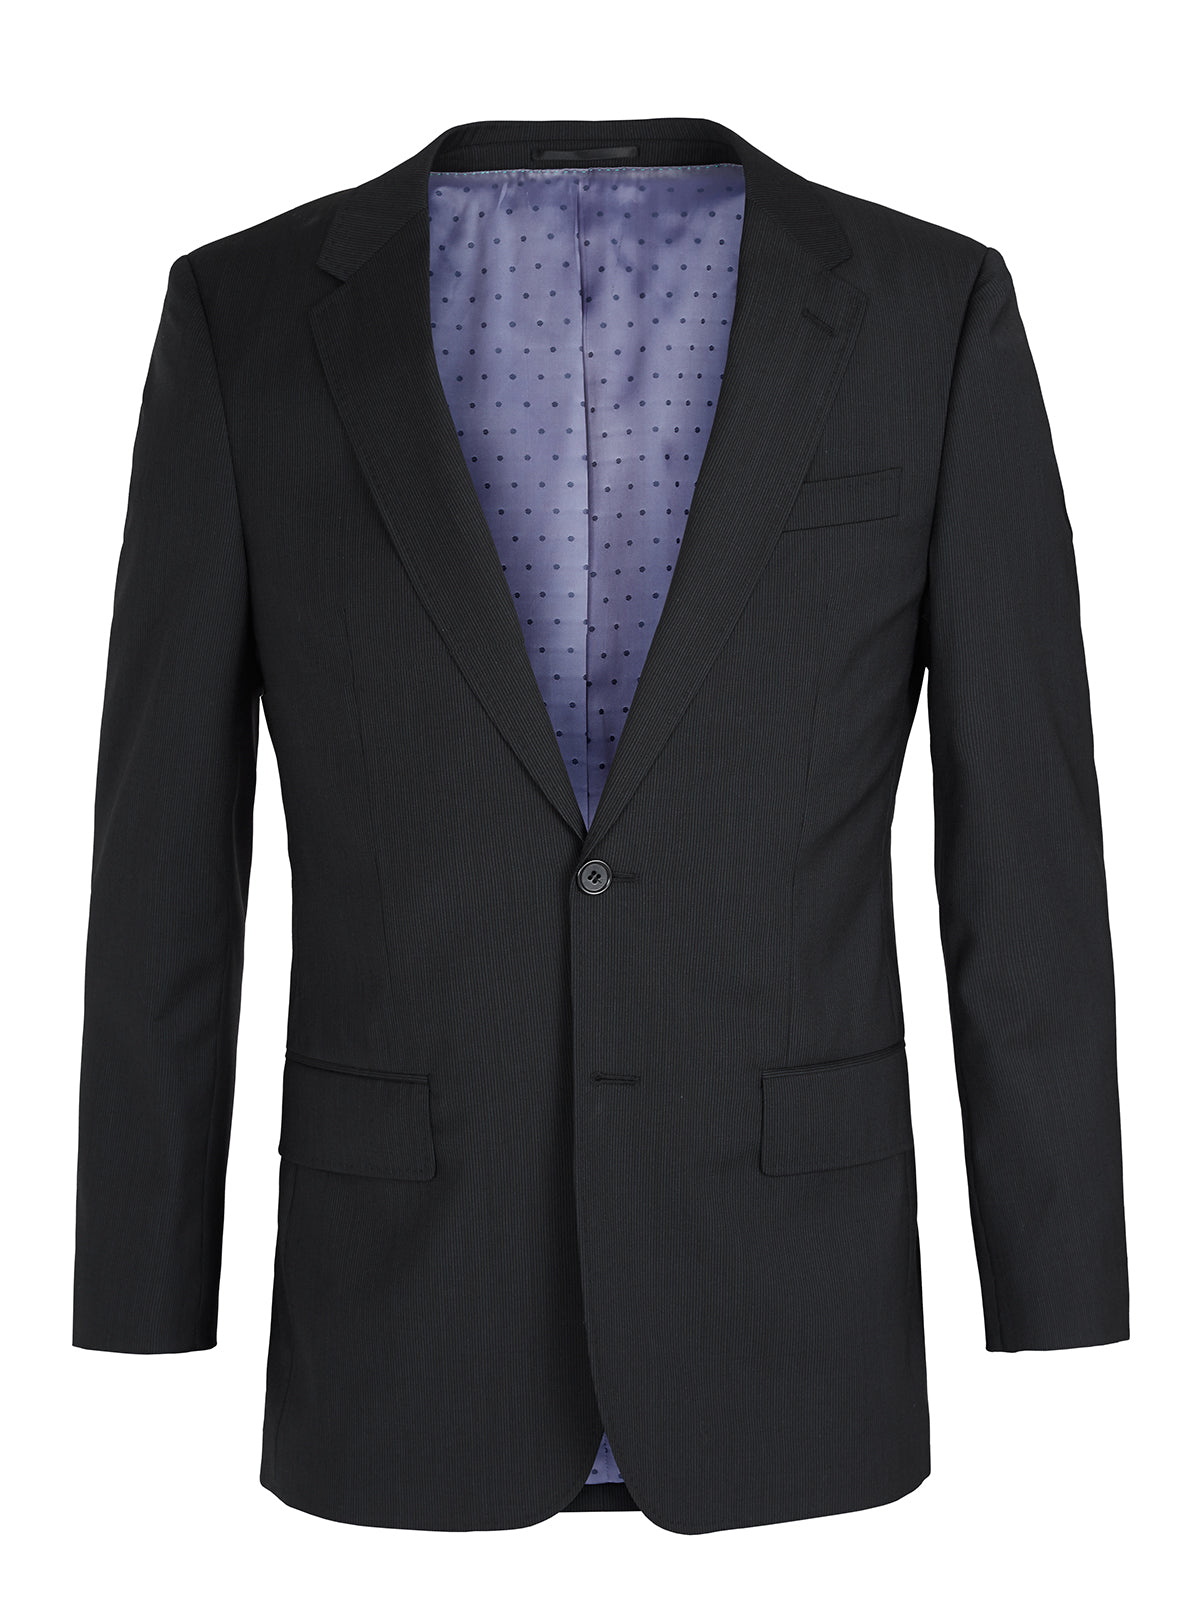 suit jacket clipart